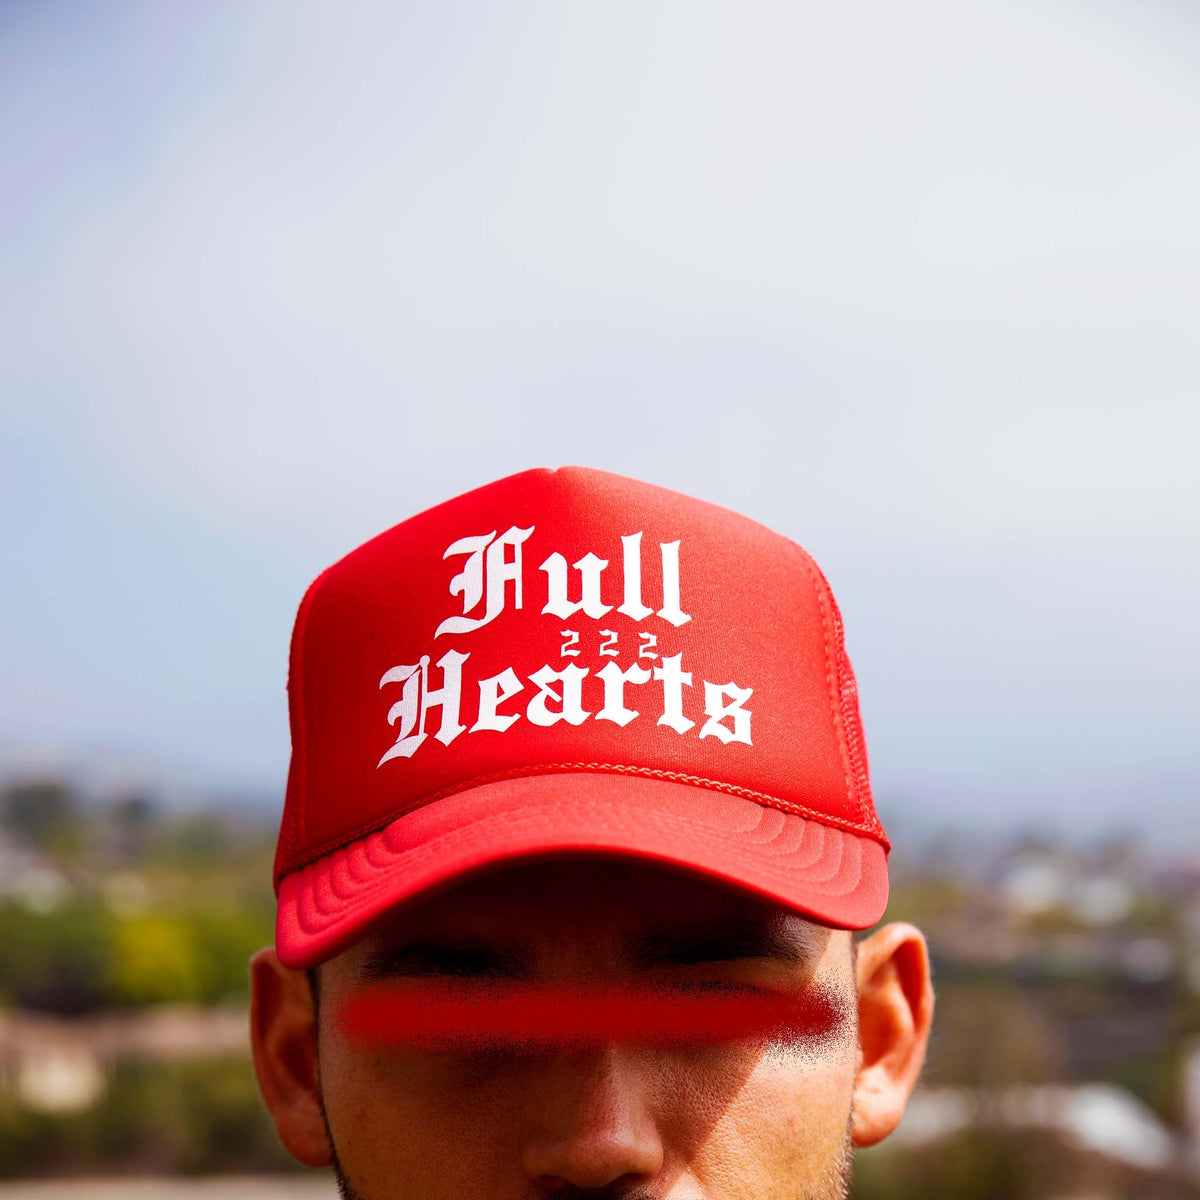 CVRTLA - Streetwear Trucker Hats Redefined